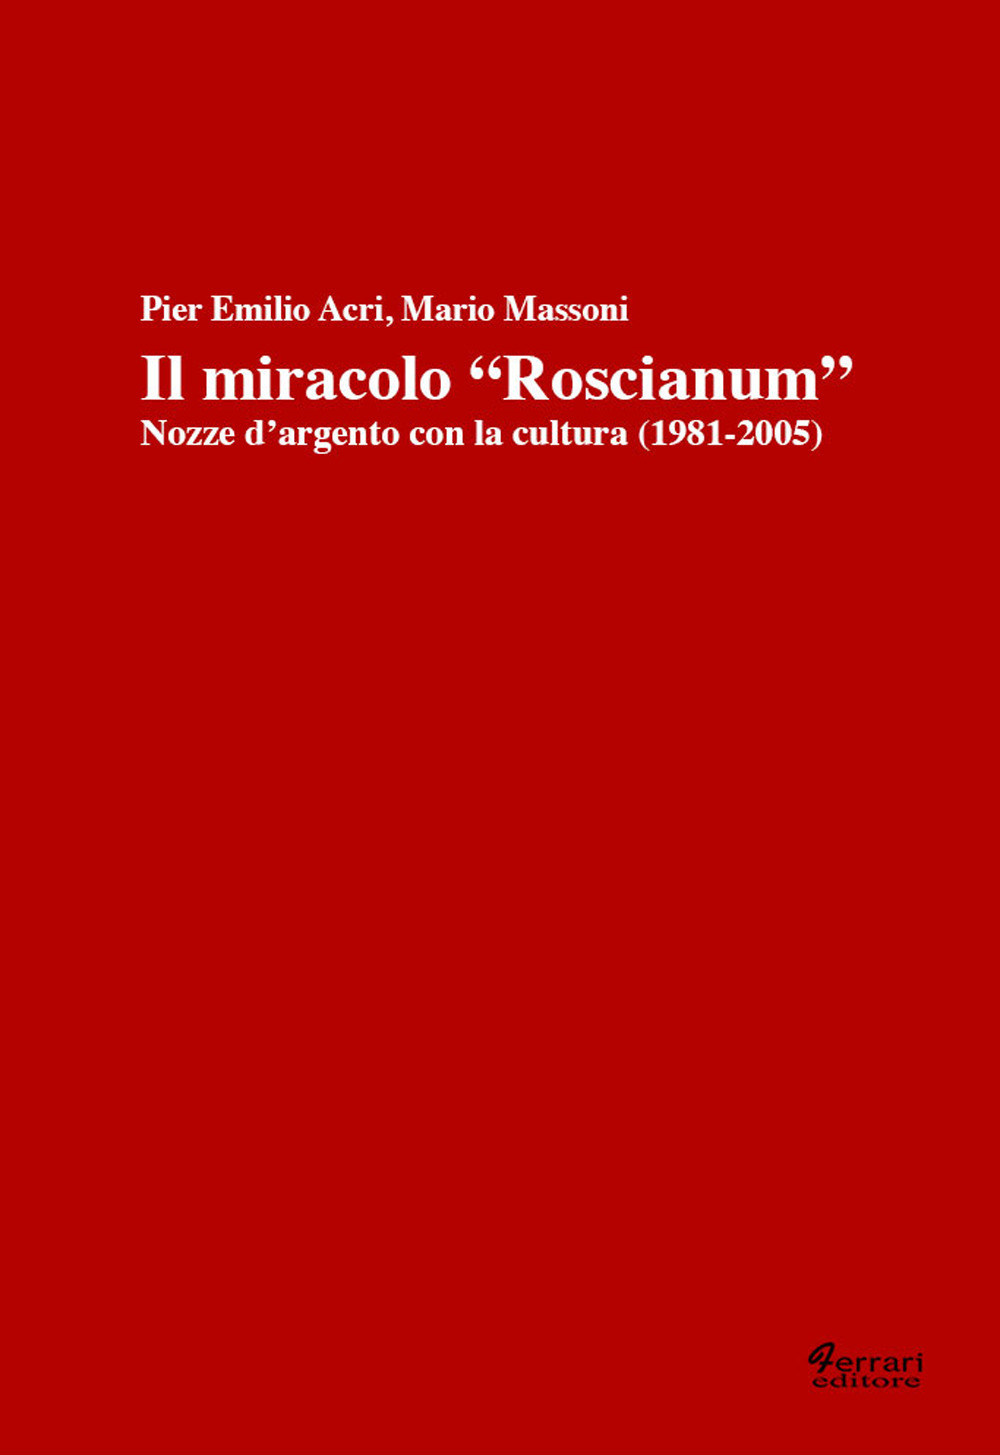 Il miracolo «Roscianum». Nozze d'argento con la cultura 1981-2005